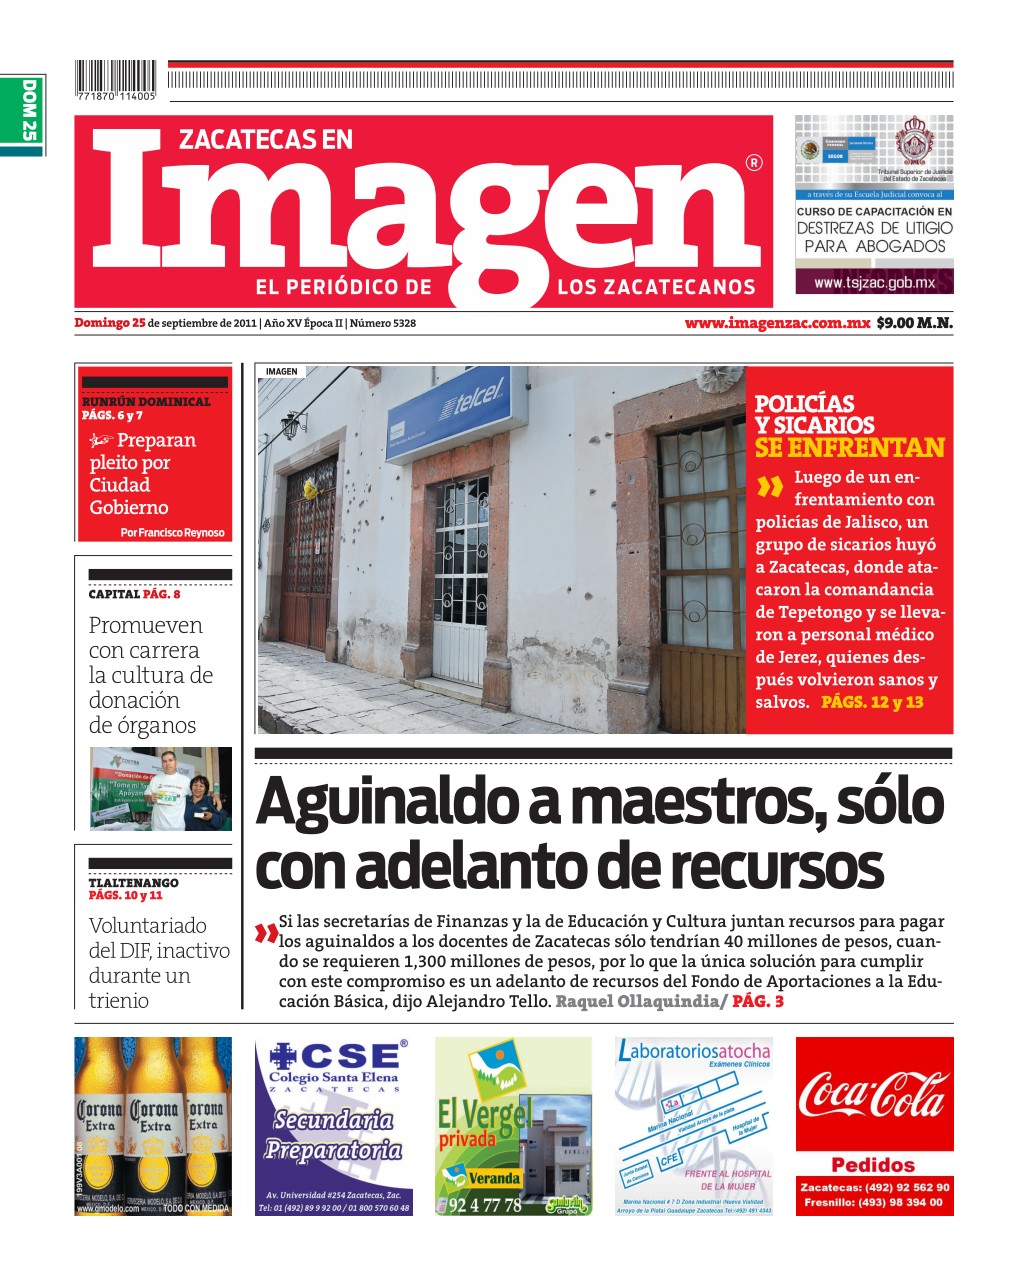 Imagen Zacatecas edición del 25 de Septiembre 2011